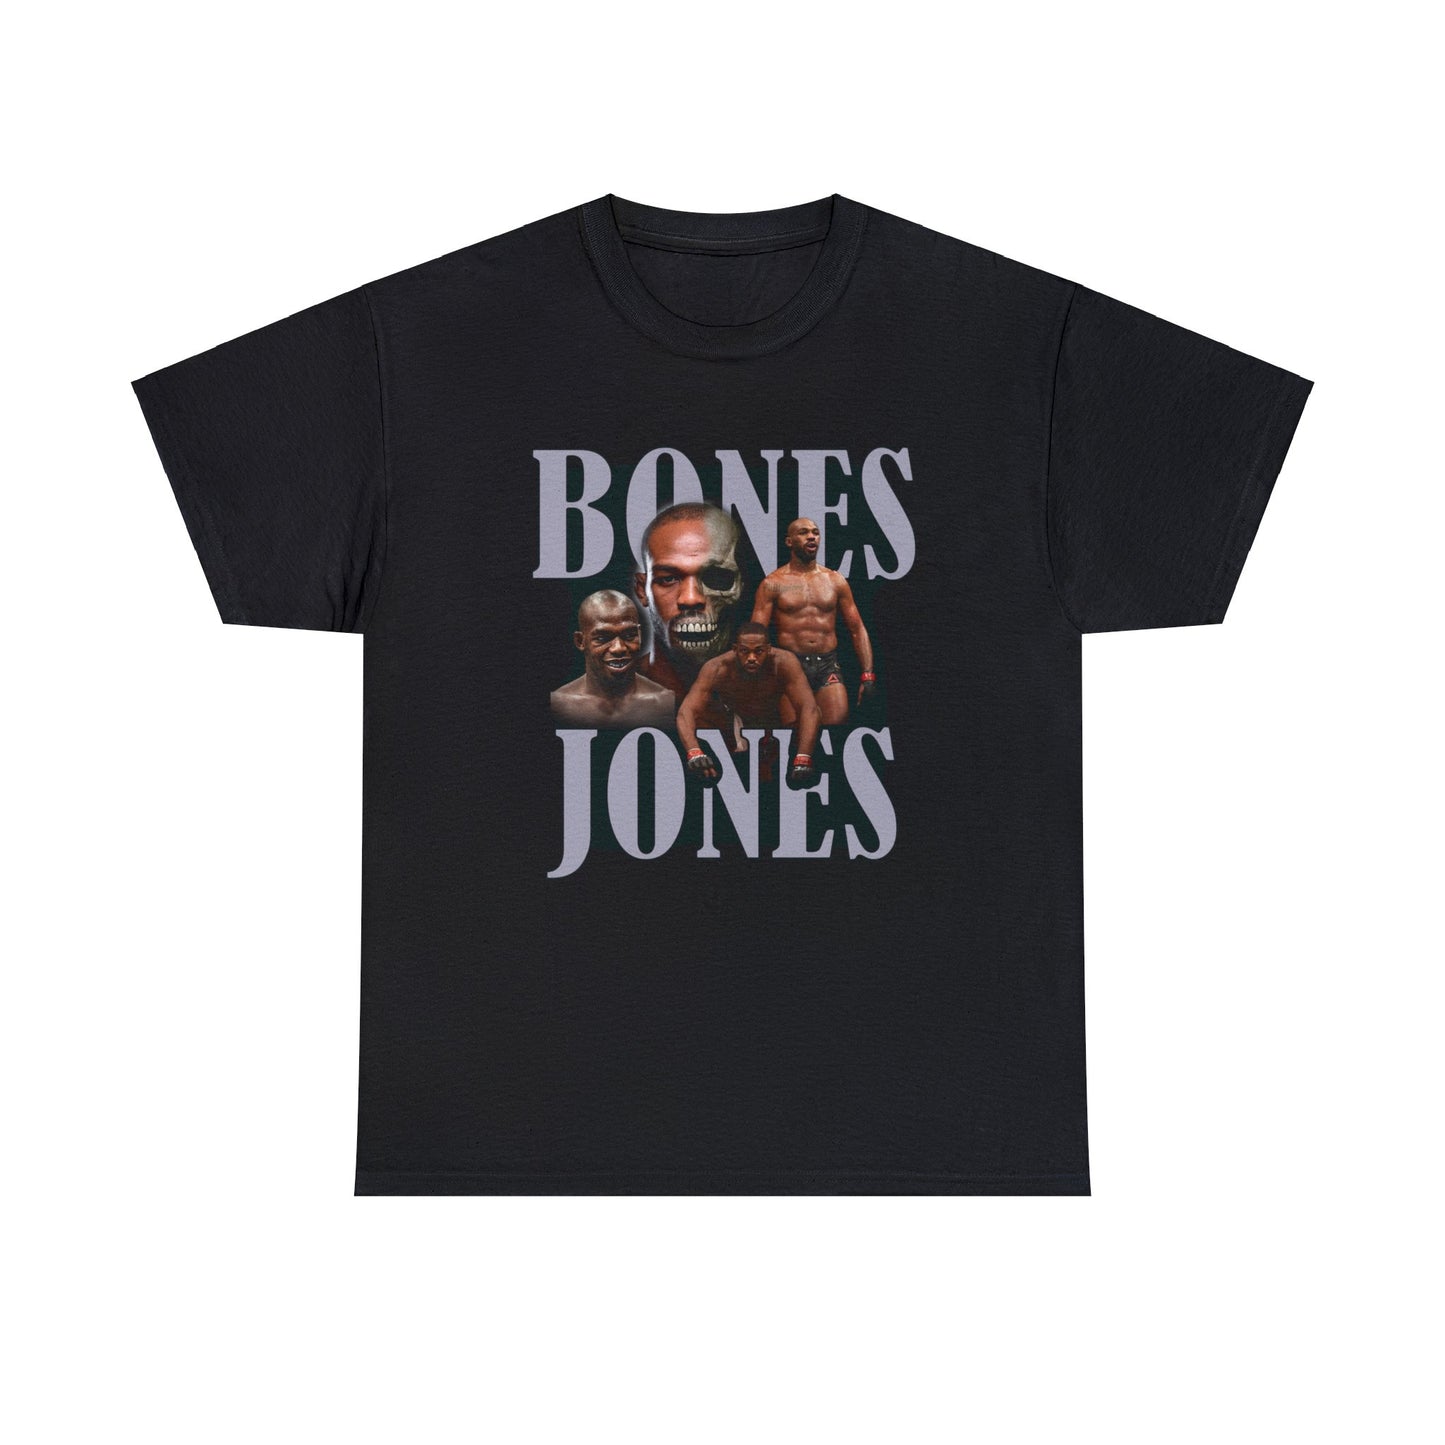 Jones Bones Tee